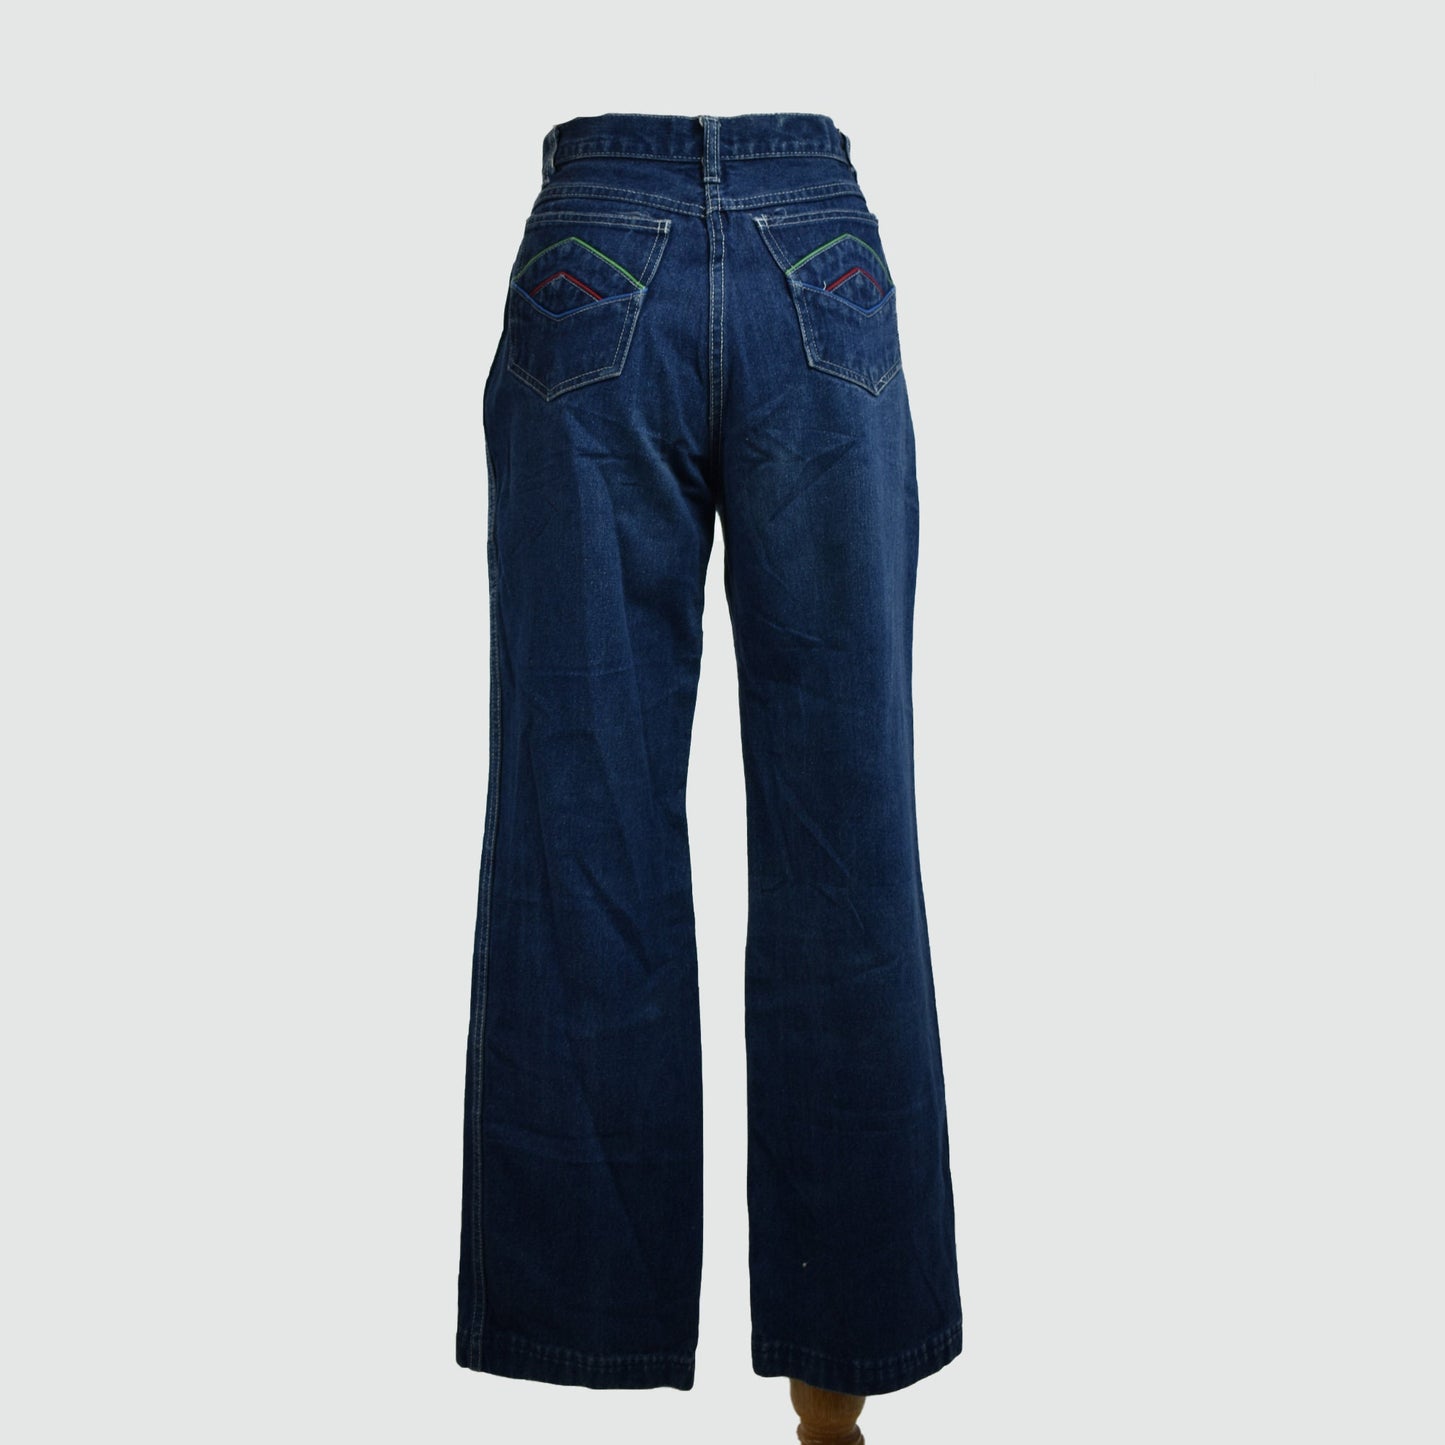 Vintage 80s Montgomery Ward Women's Jeans High Waist Straight Leg Denim